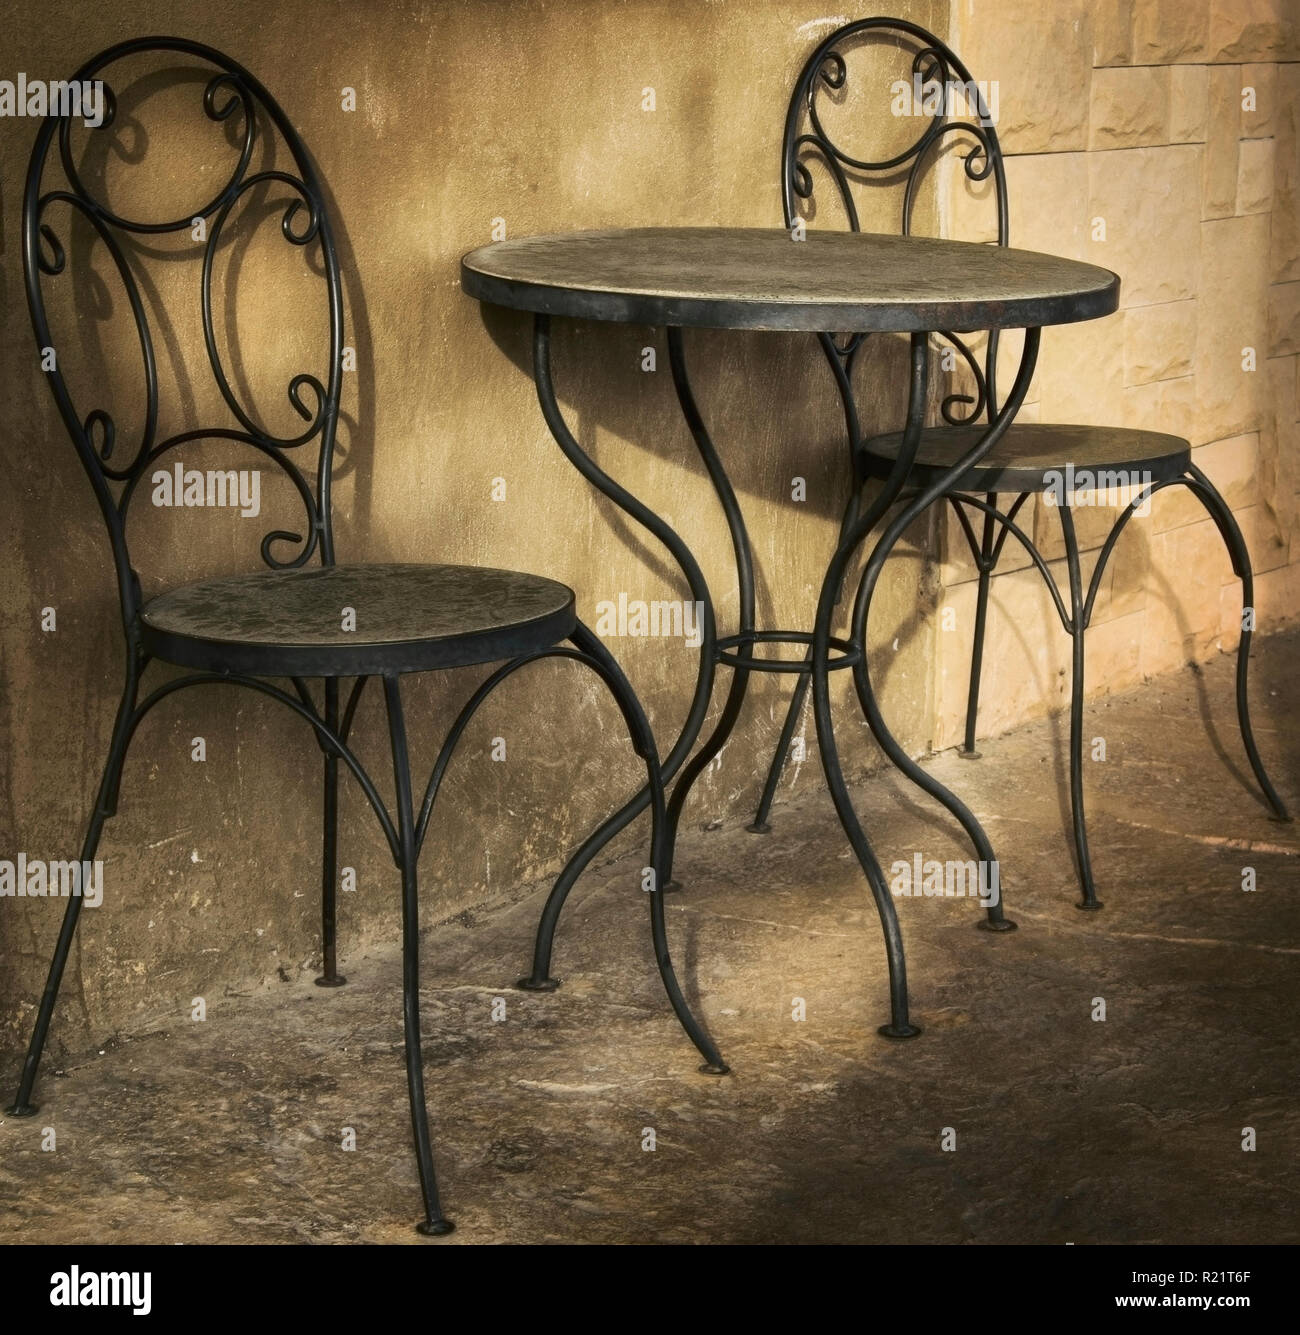 La mesa con dos sillas es el costo en la calle street cafe en parches de luz solar Foto de stock